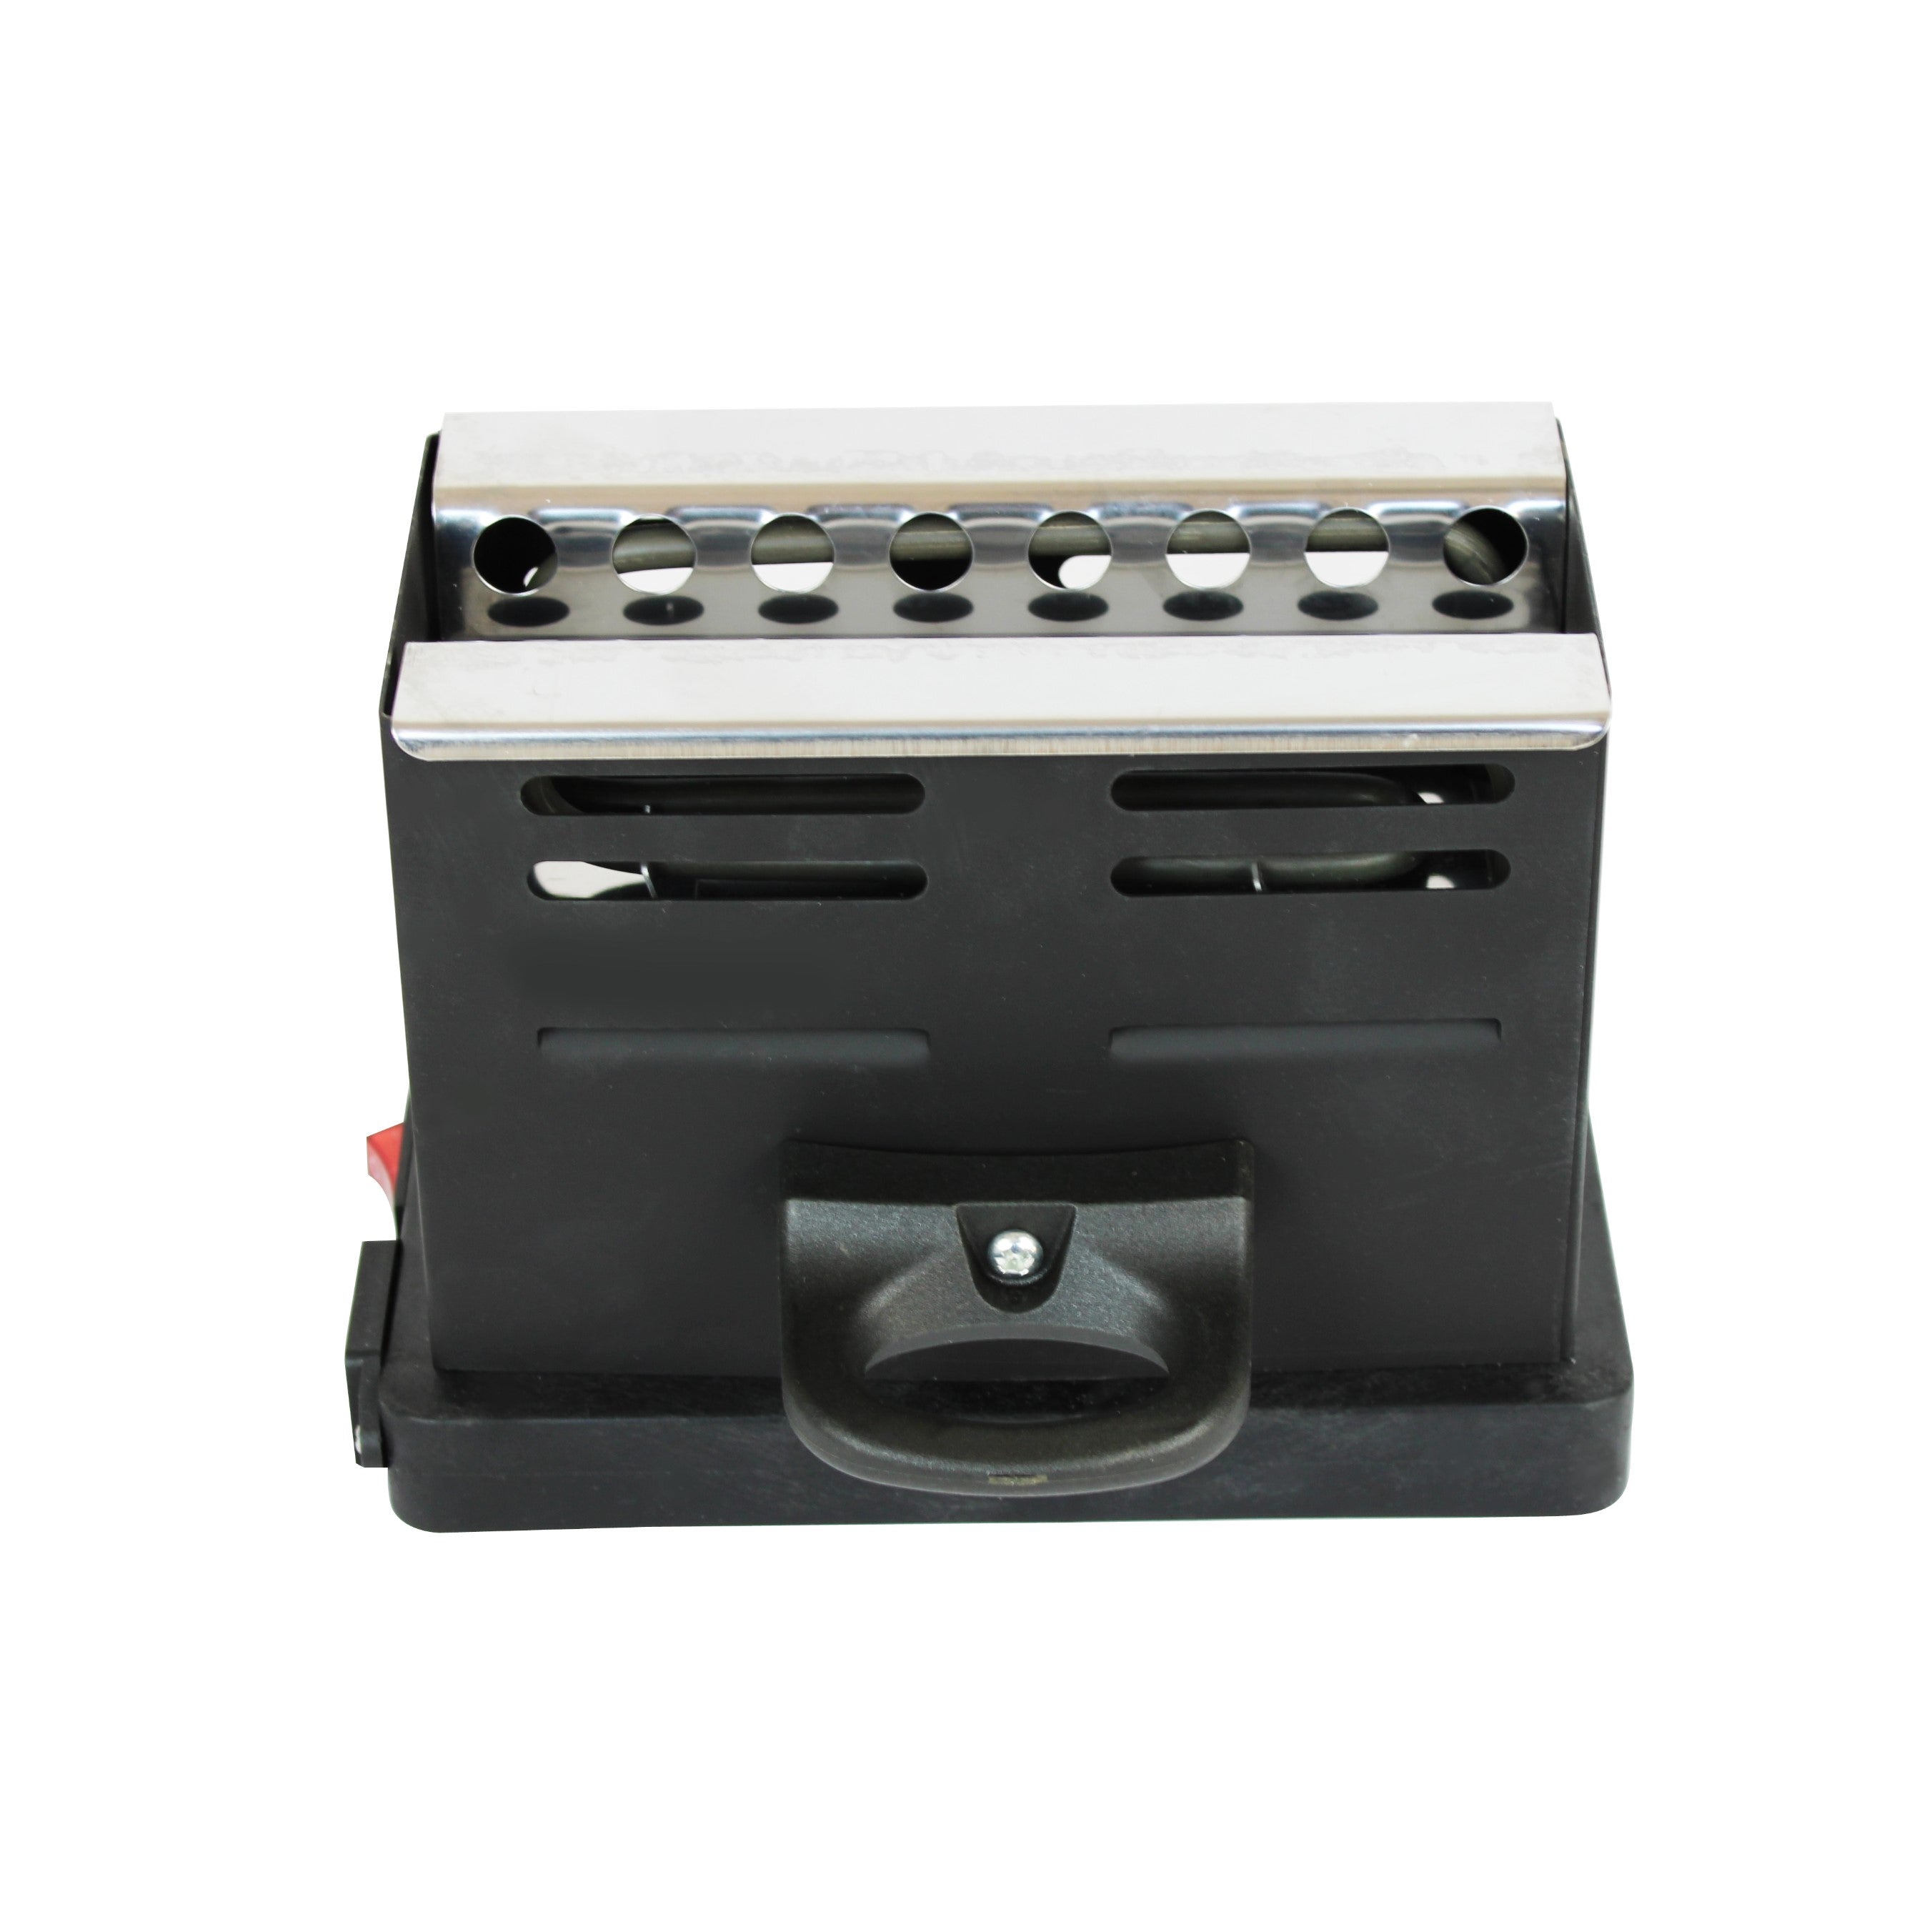 Allume charbon Chicha Toaster Rapide 800W